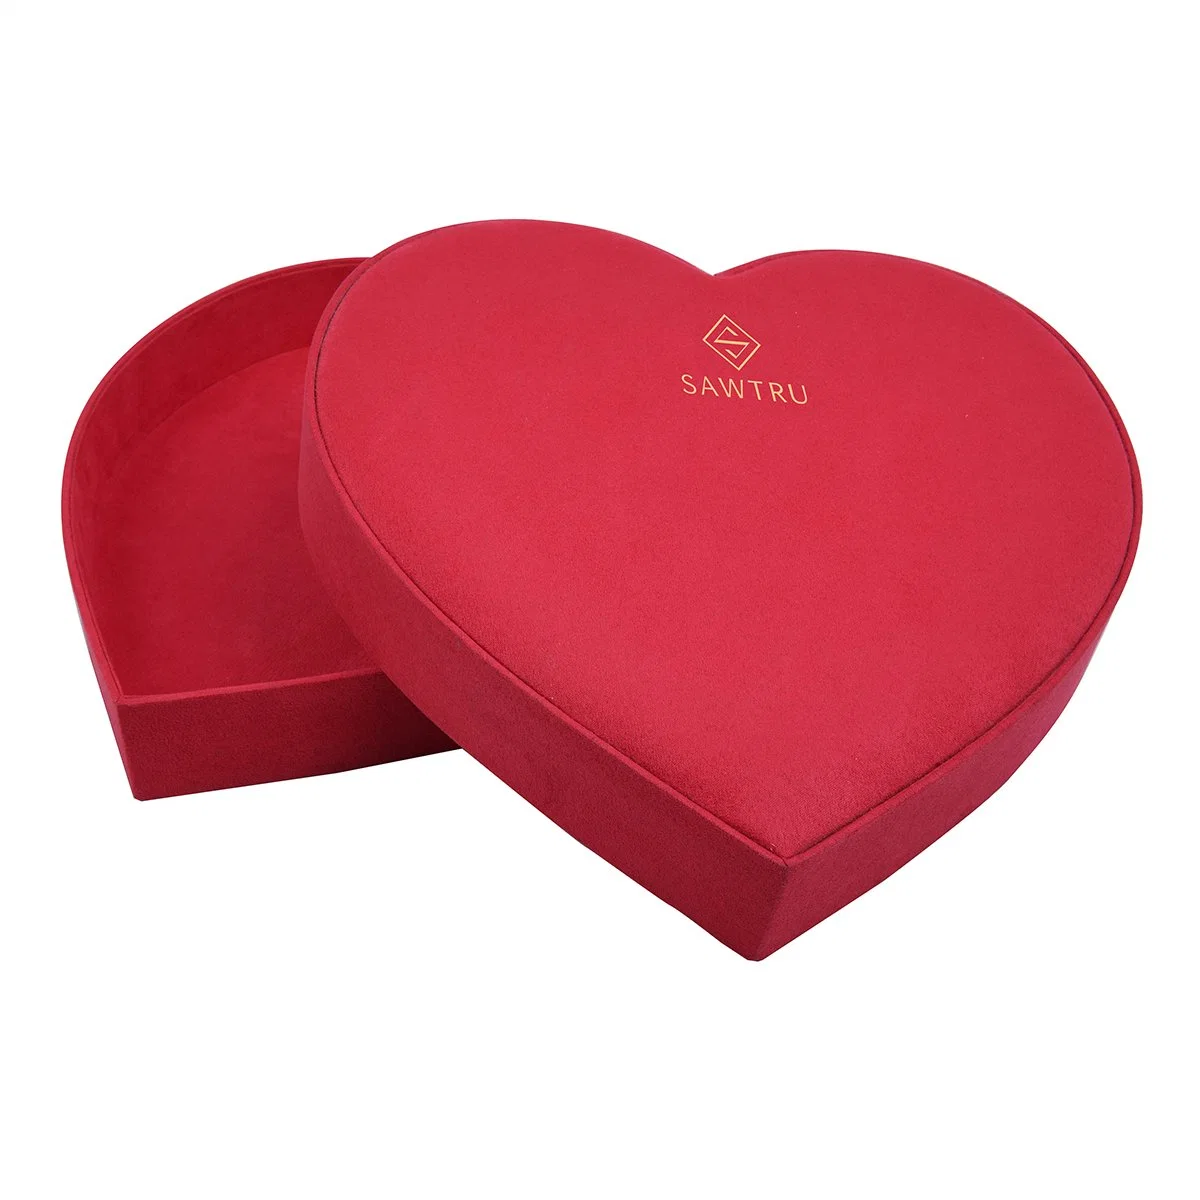 Размер 29*31*6cm Большая форма сердца картонная упаковка коробка для Валентина Упаковка подарков на день